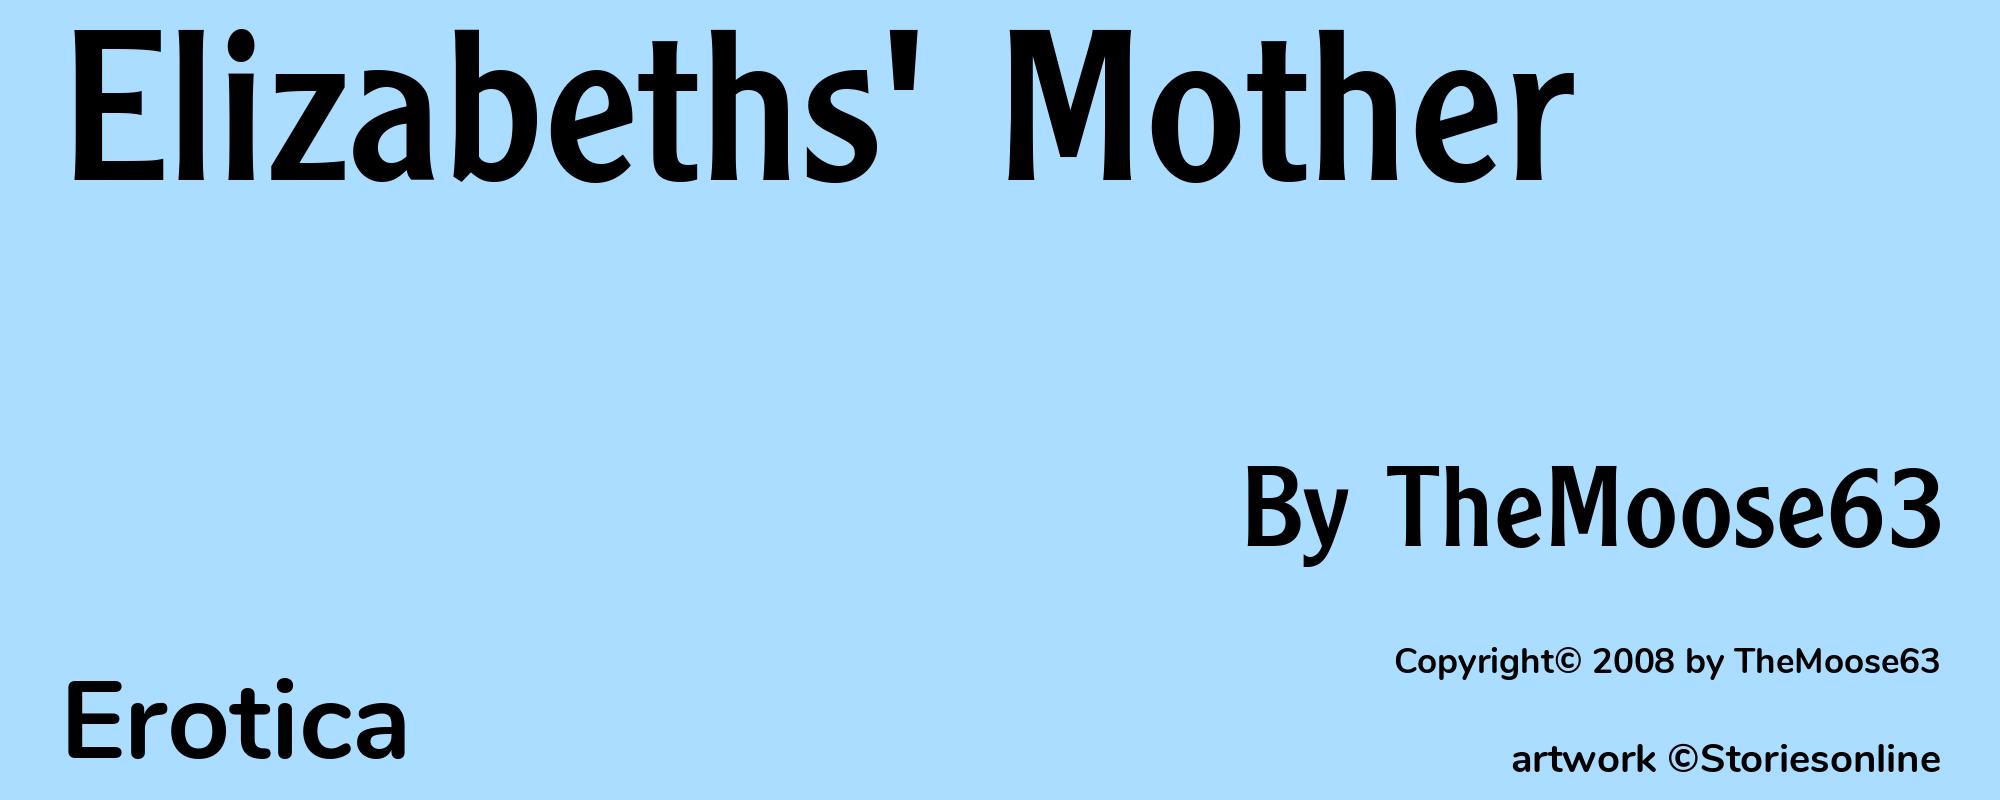 Elizabeths' Mother - Cover